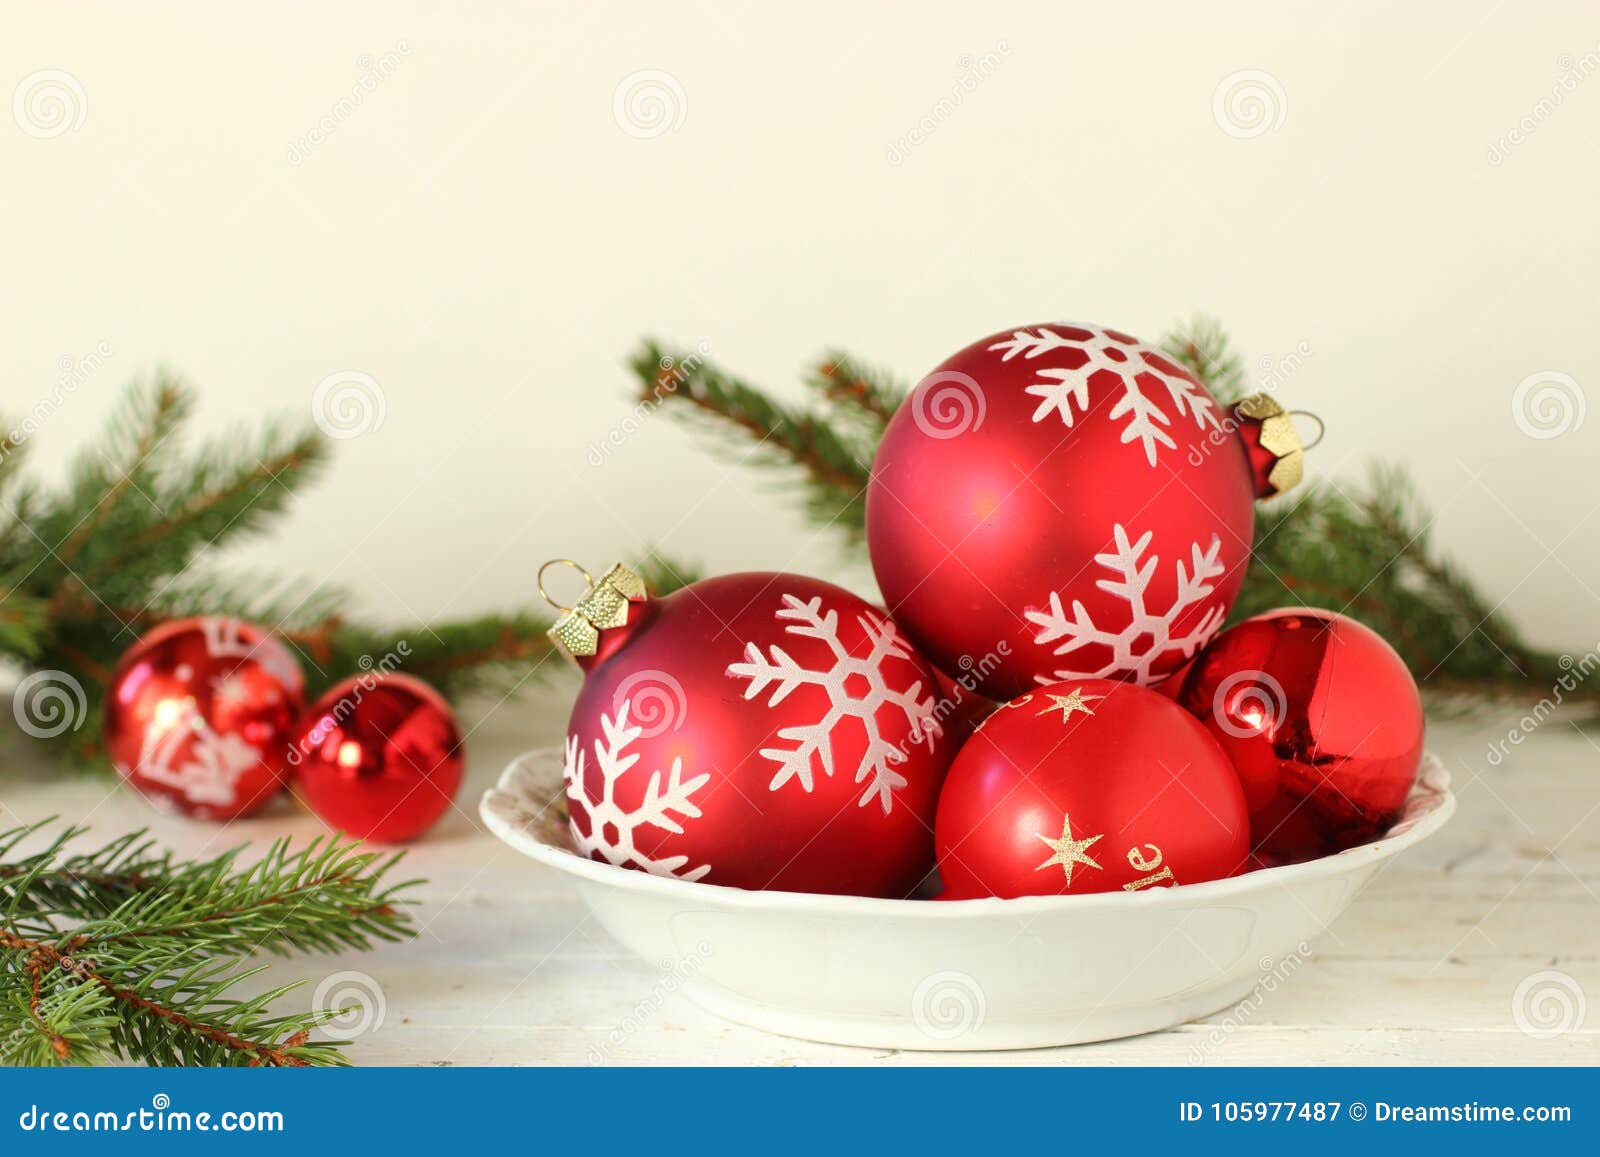 Esfera vermelha do Natal no fundo branco. Uma bacia de bola vermelha do Natal na tabela com ramos verdes